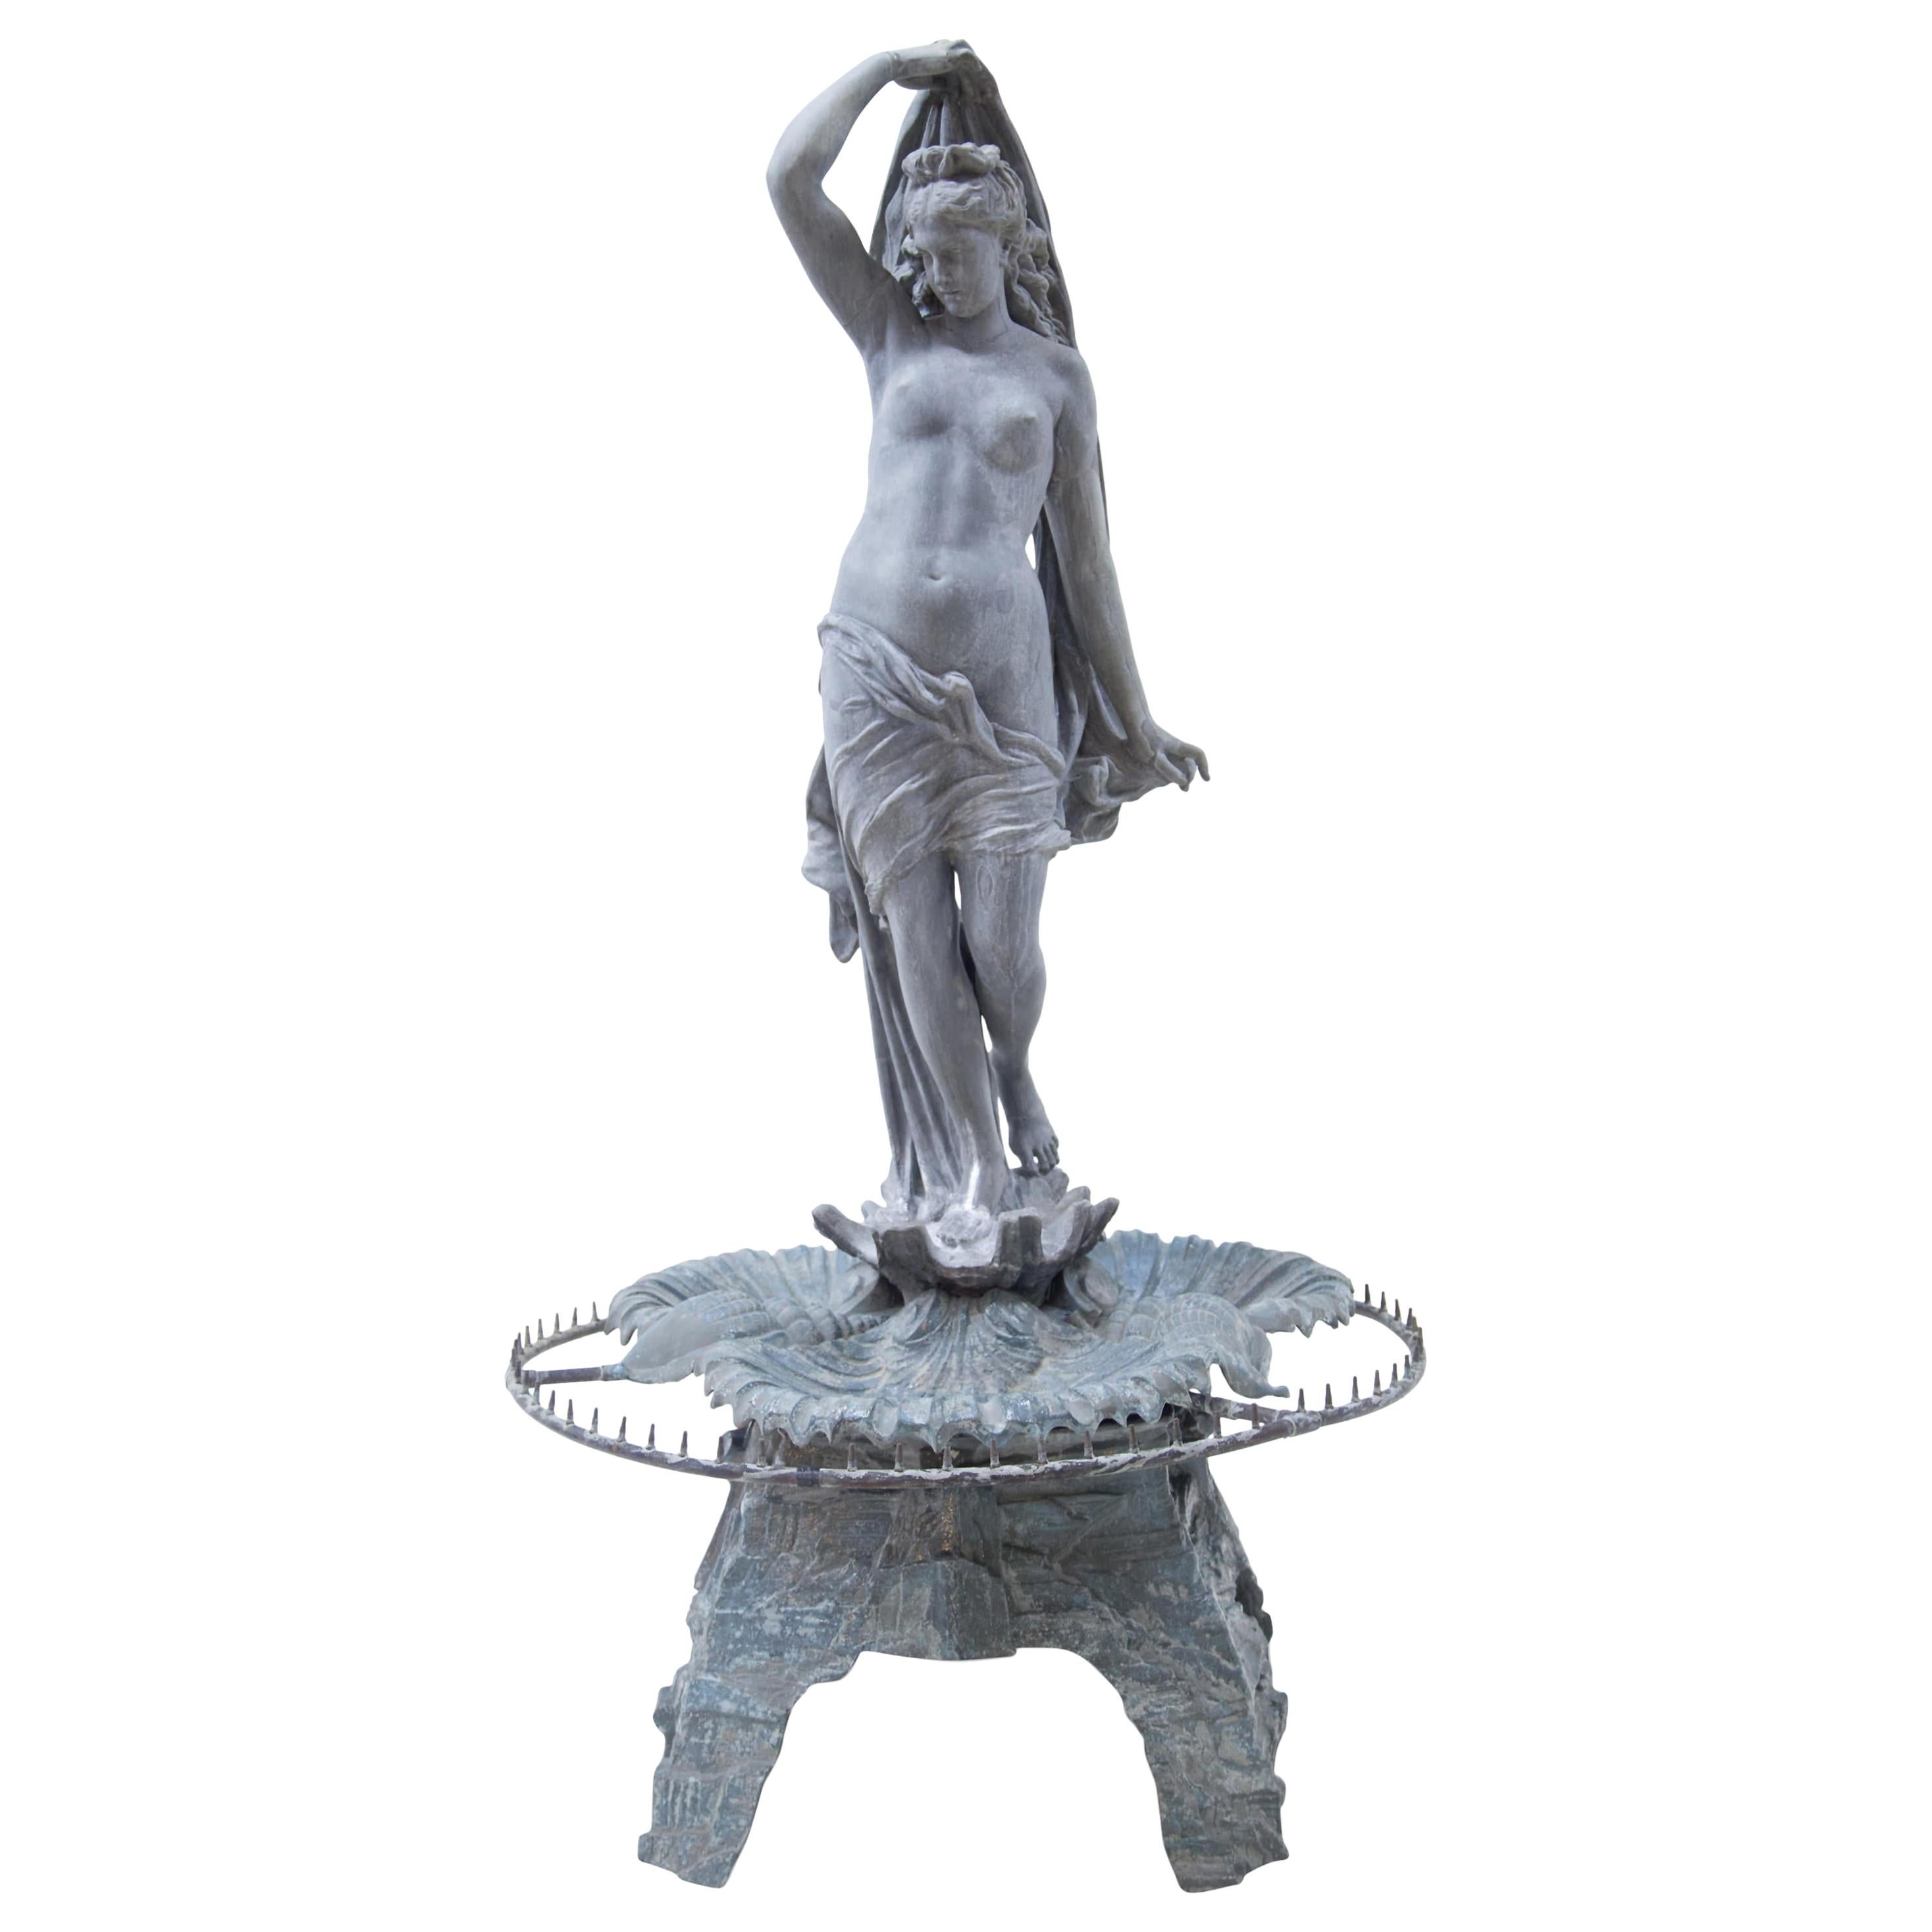 Zinc Fountain "Venus Rising from the Sea", J.L. Mott, New York, 1880